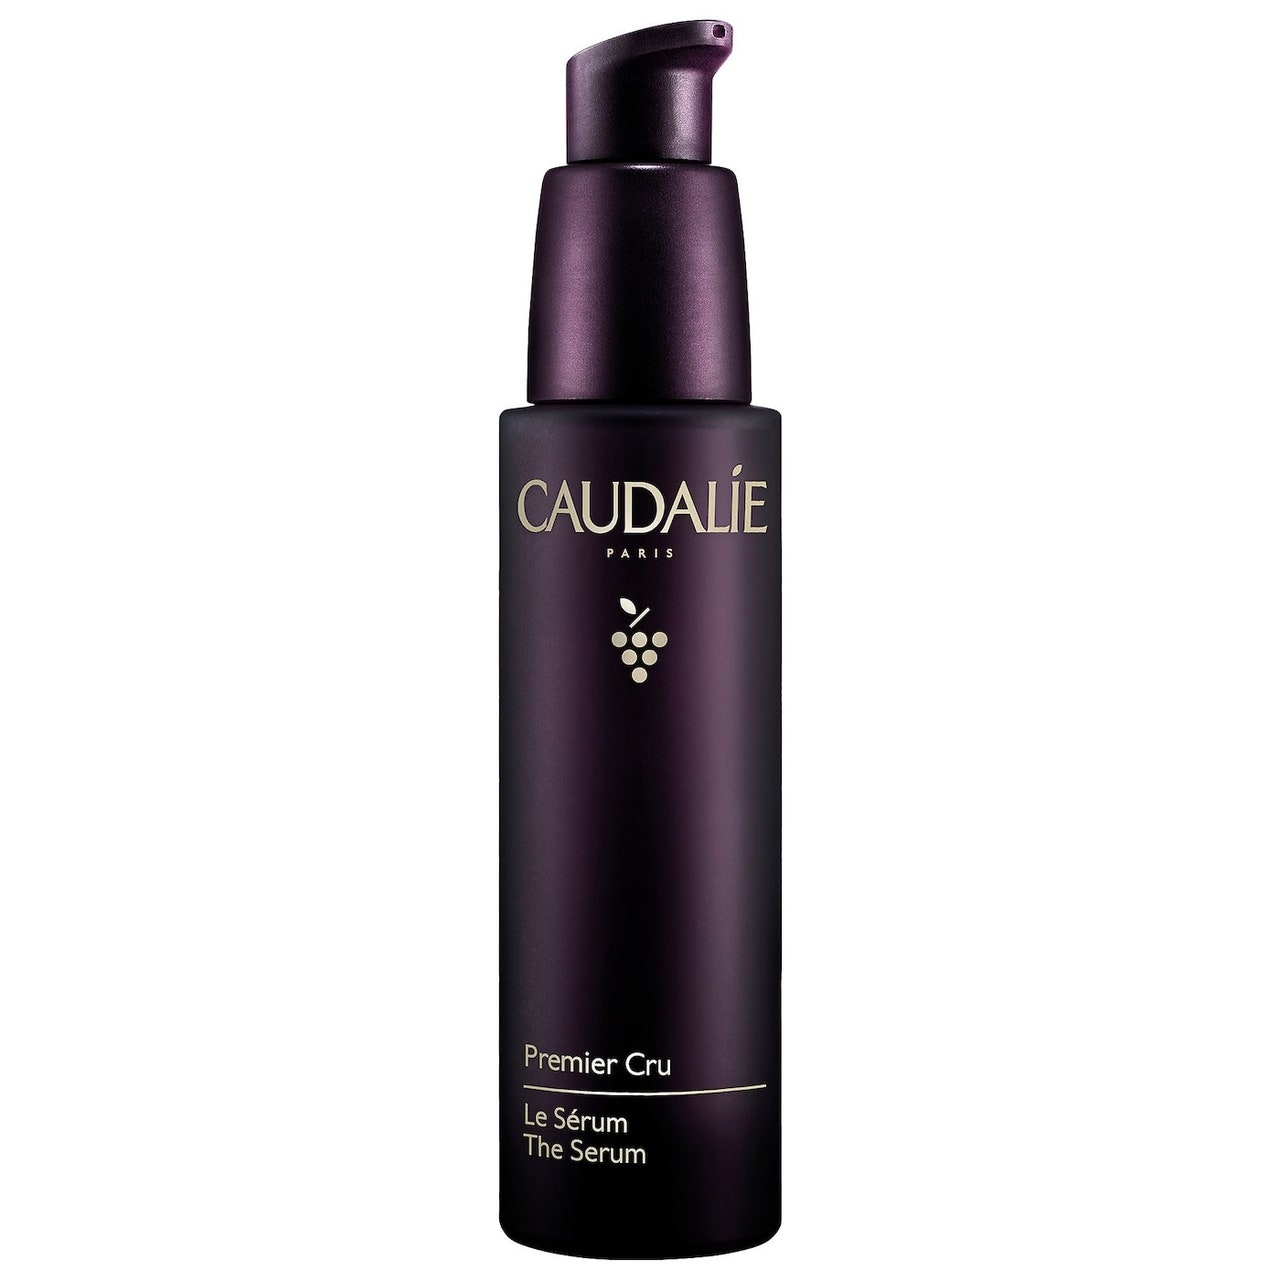 Caudalie Premier Cru Anti-Aging Serum dunkelviolette Pumpflasche auf weißem Hintergrund